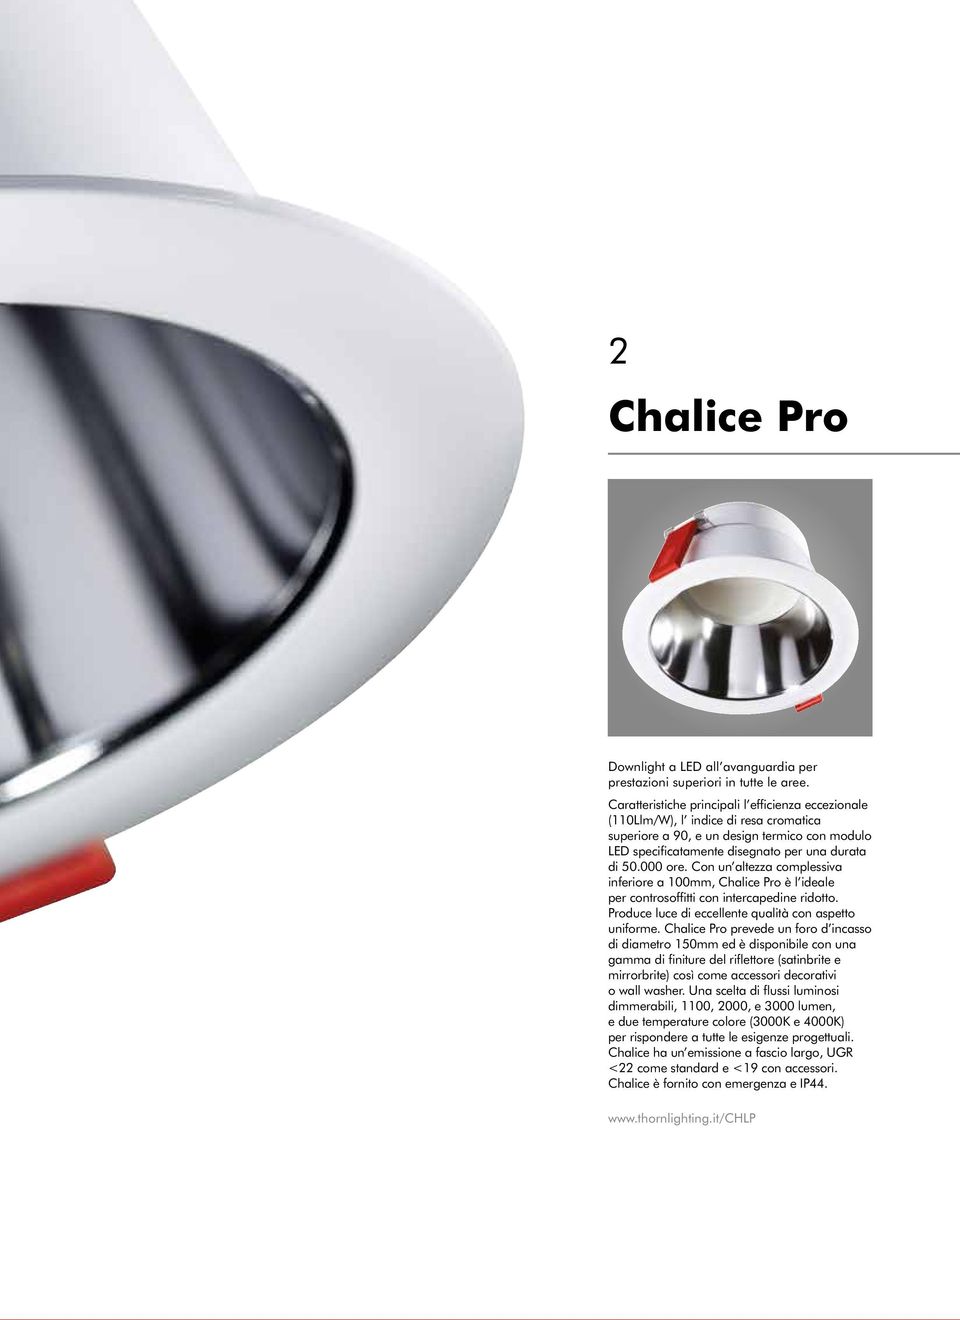 Con un altezza complessiva inferiore a 100mm, Chalice Pro è l ideale per controsoffitti con intercapedine ridotto. Produce luce di eccellente qualità con aspetto uniforme.